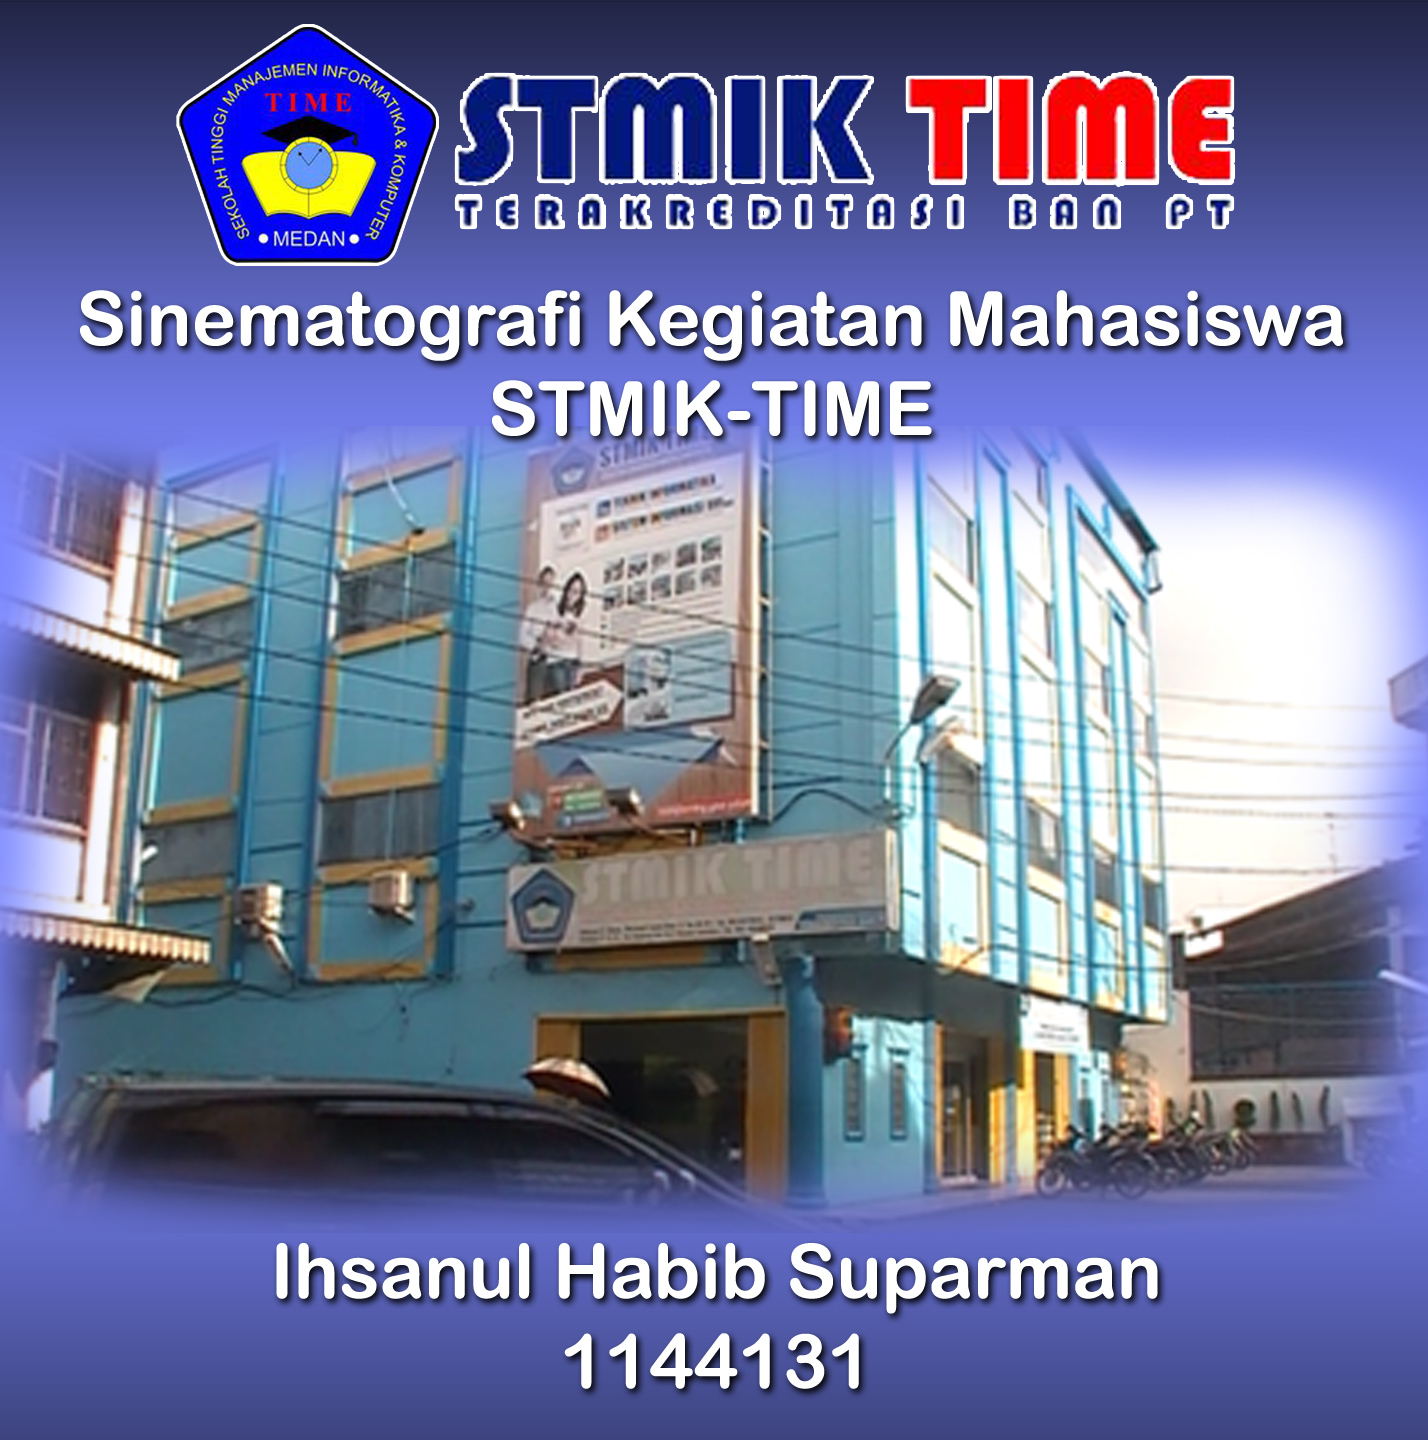 Profil STMIK TIME 2 Medan Produksi Opique video kali ini merupakan tugas akhir mahasiswa STMIK TIME 2 di produksi pada tahun 2013